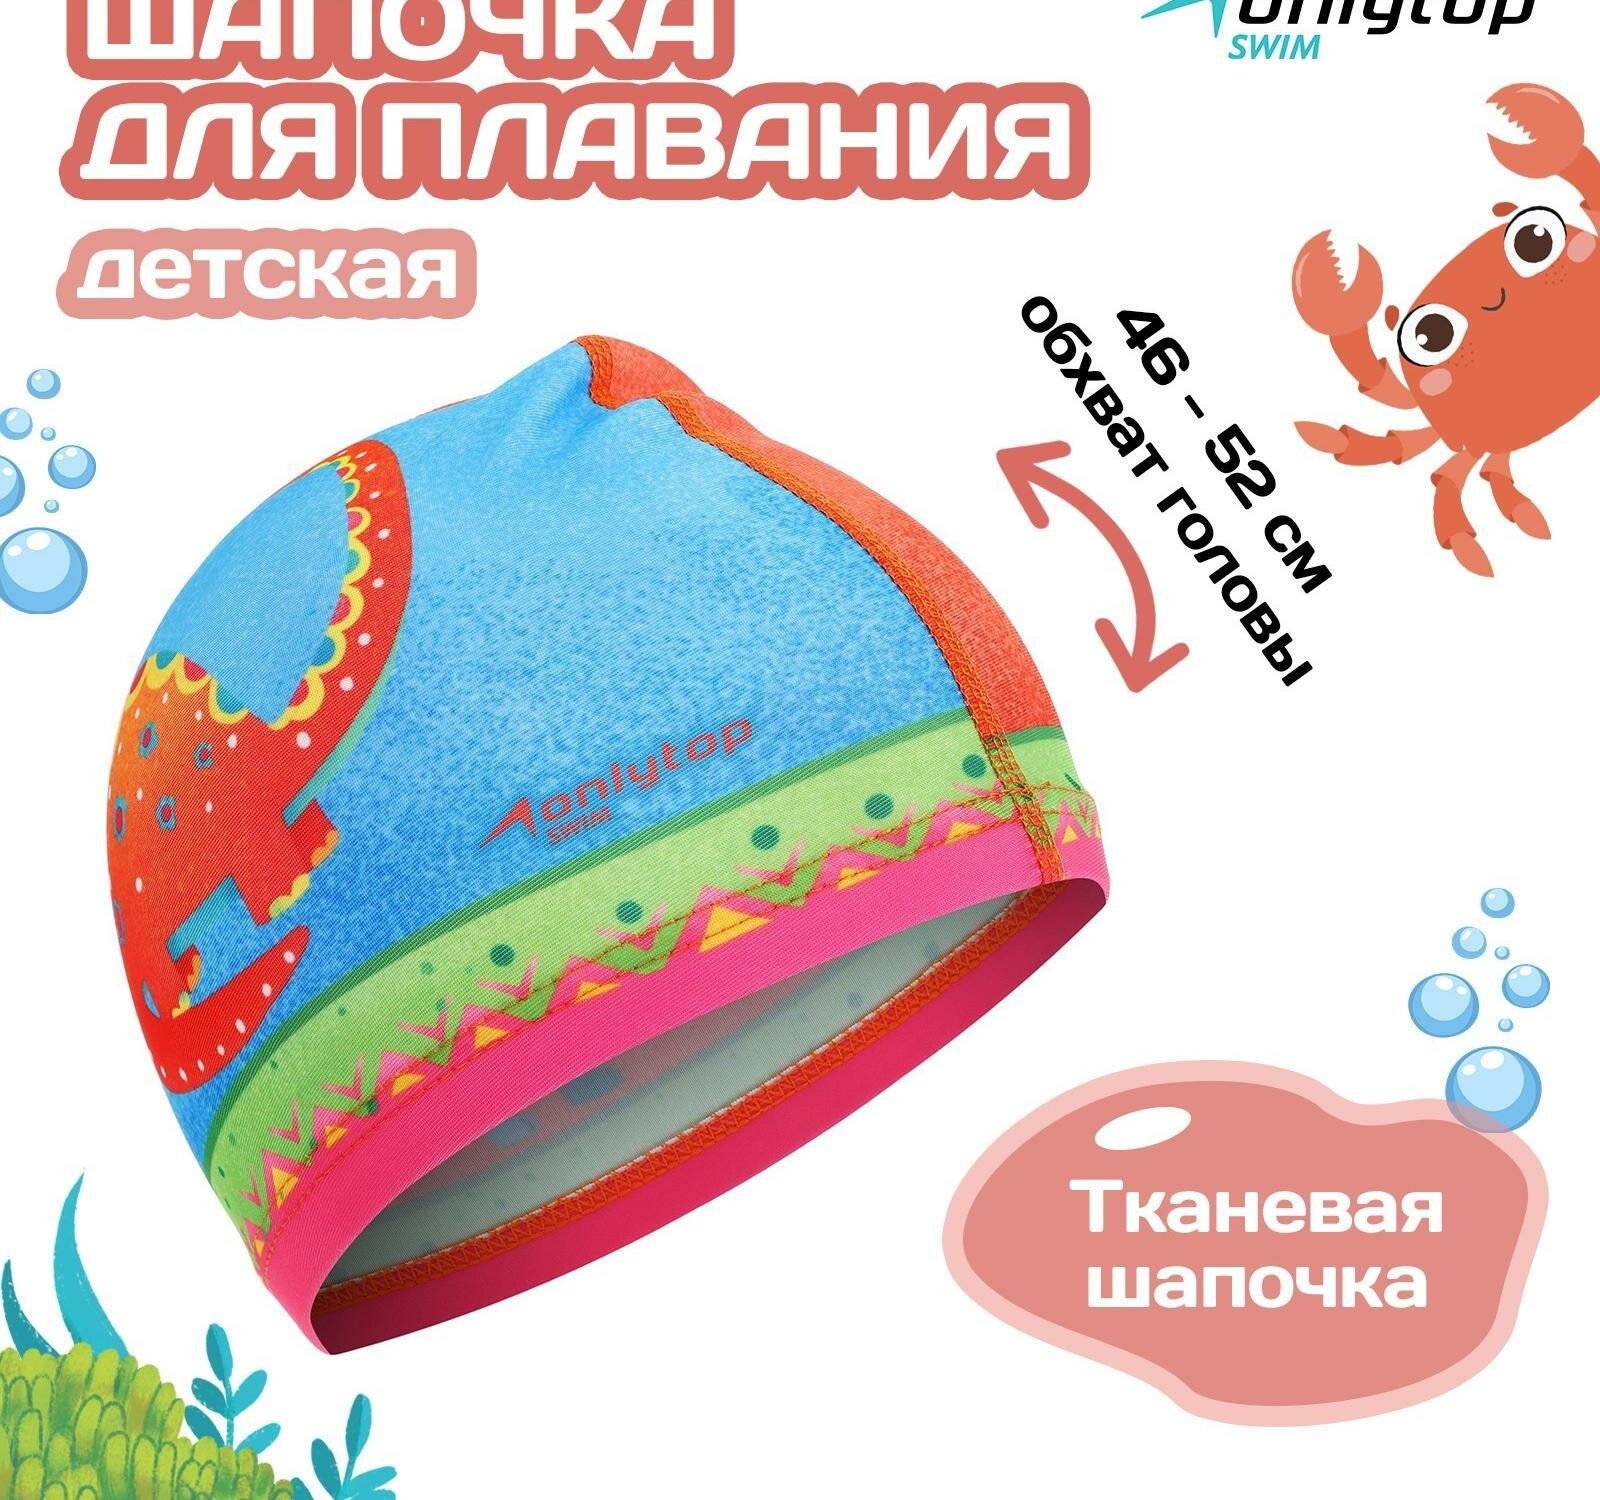 Шапочка для плавания детская ONLYTOP "Дино", тканевая, обхват 46-52 см